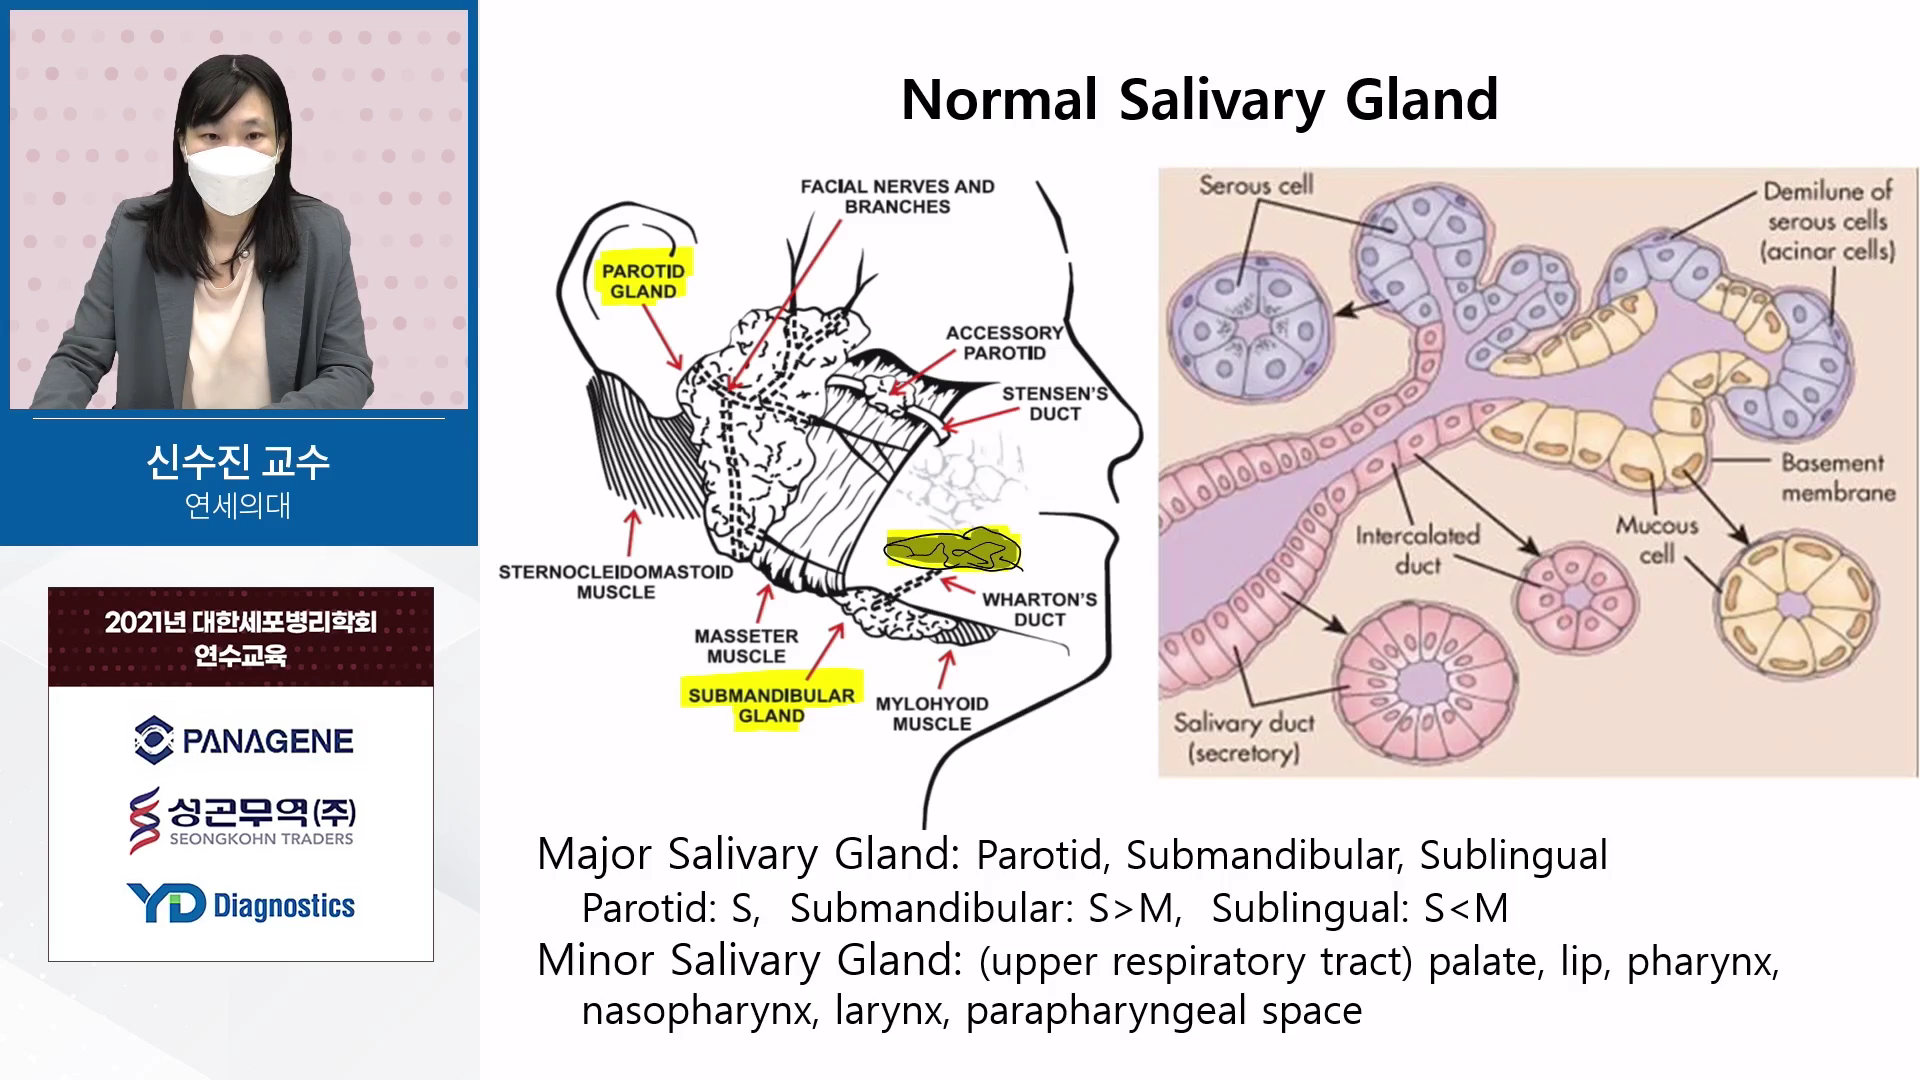 Salivary gland FNA